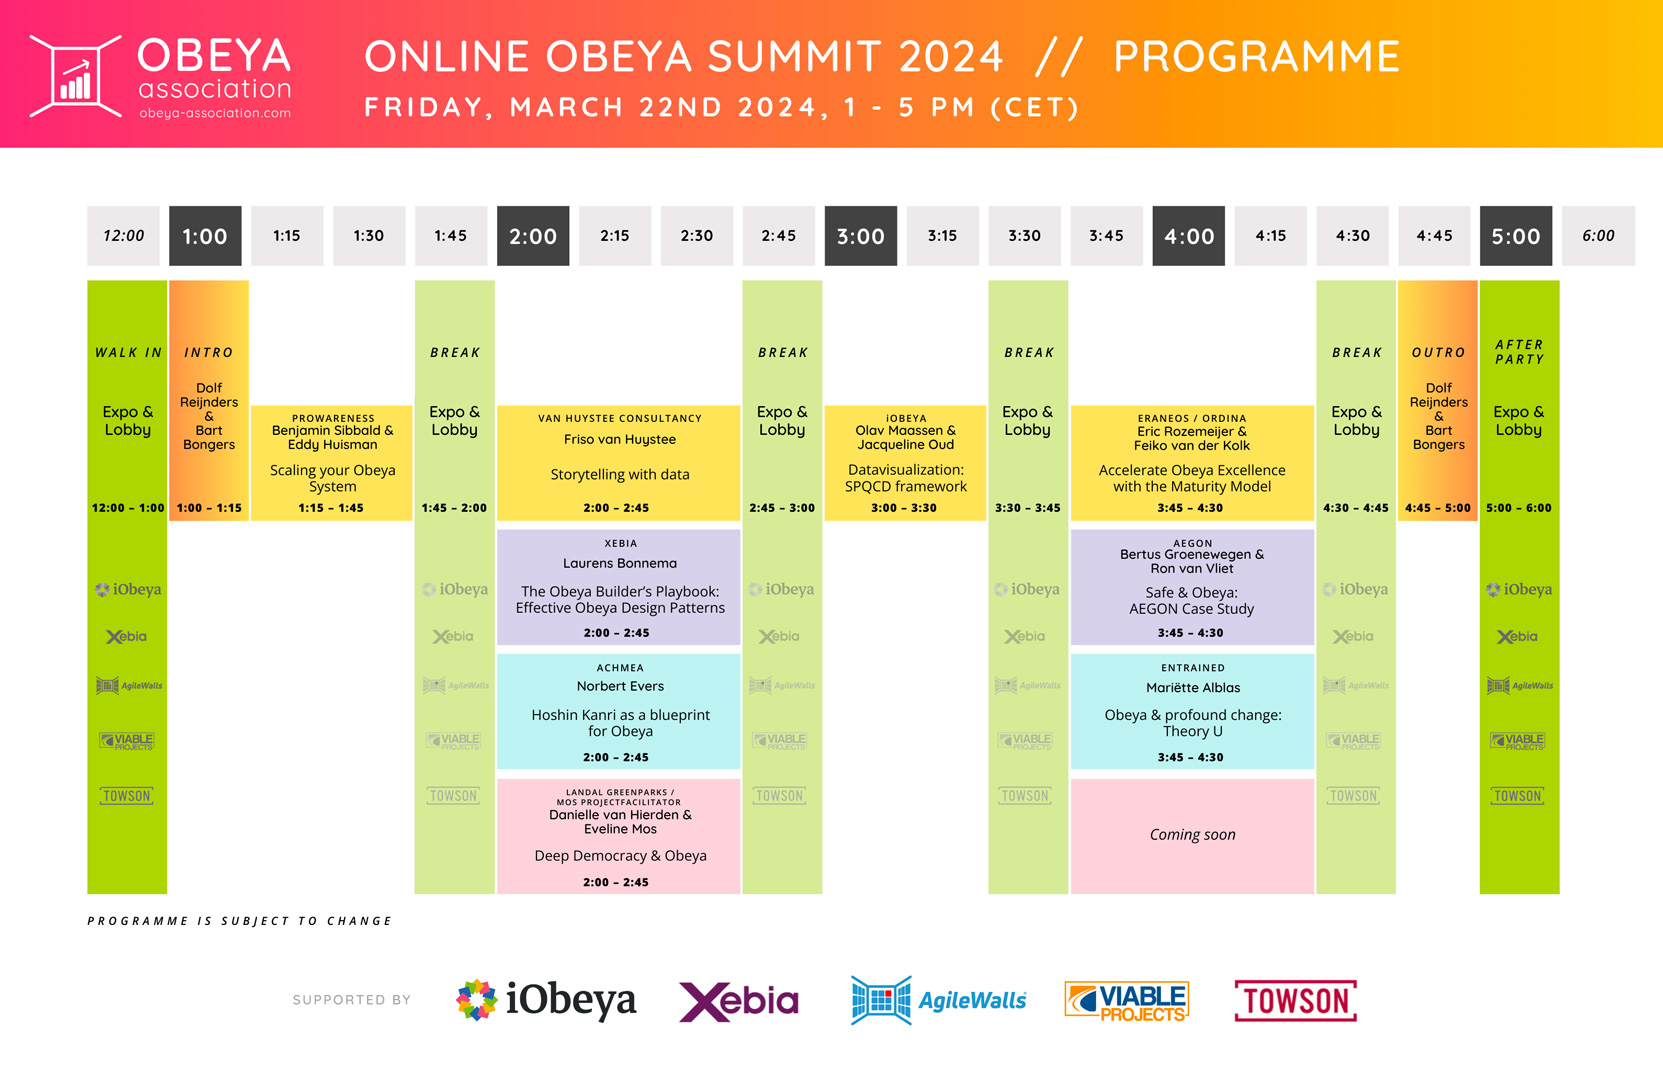 Online Obeya Summit 2024 Line-up